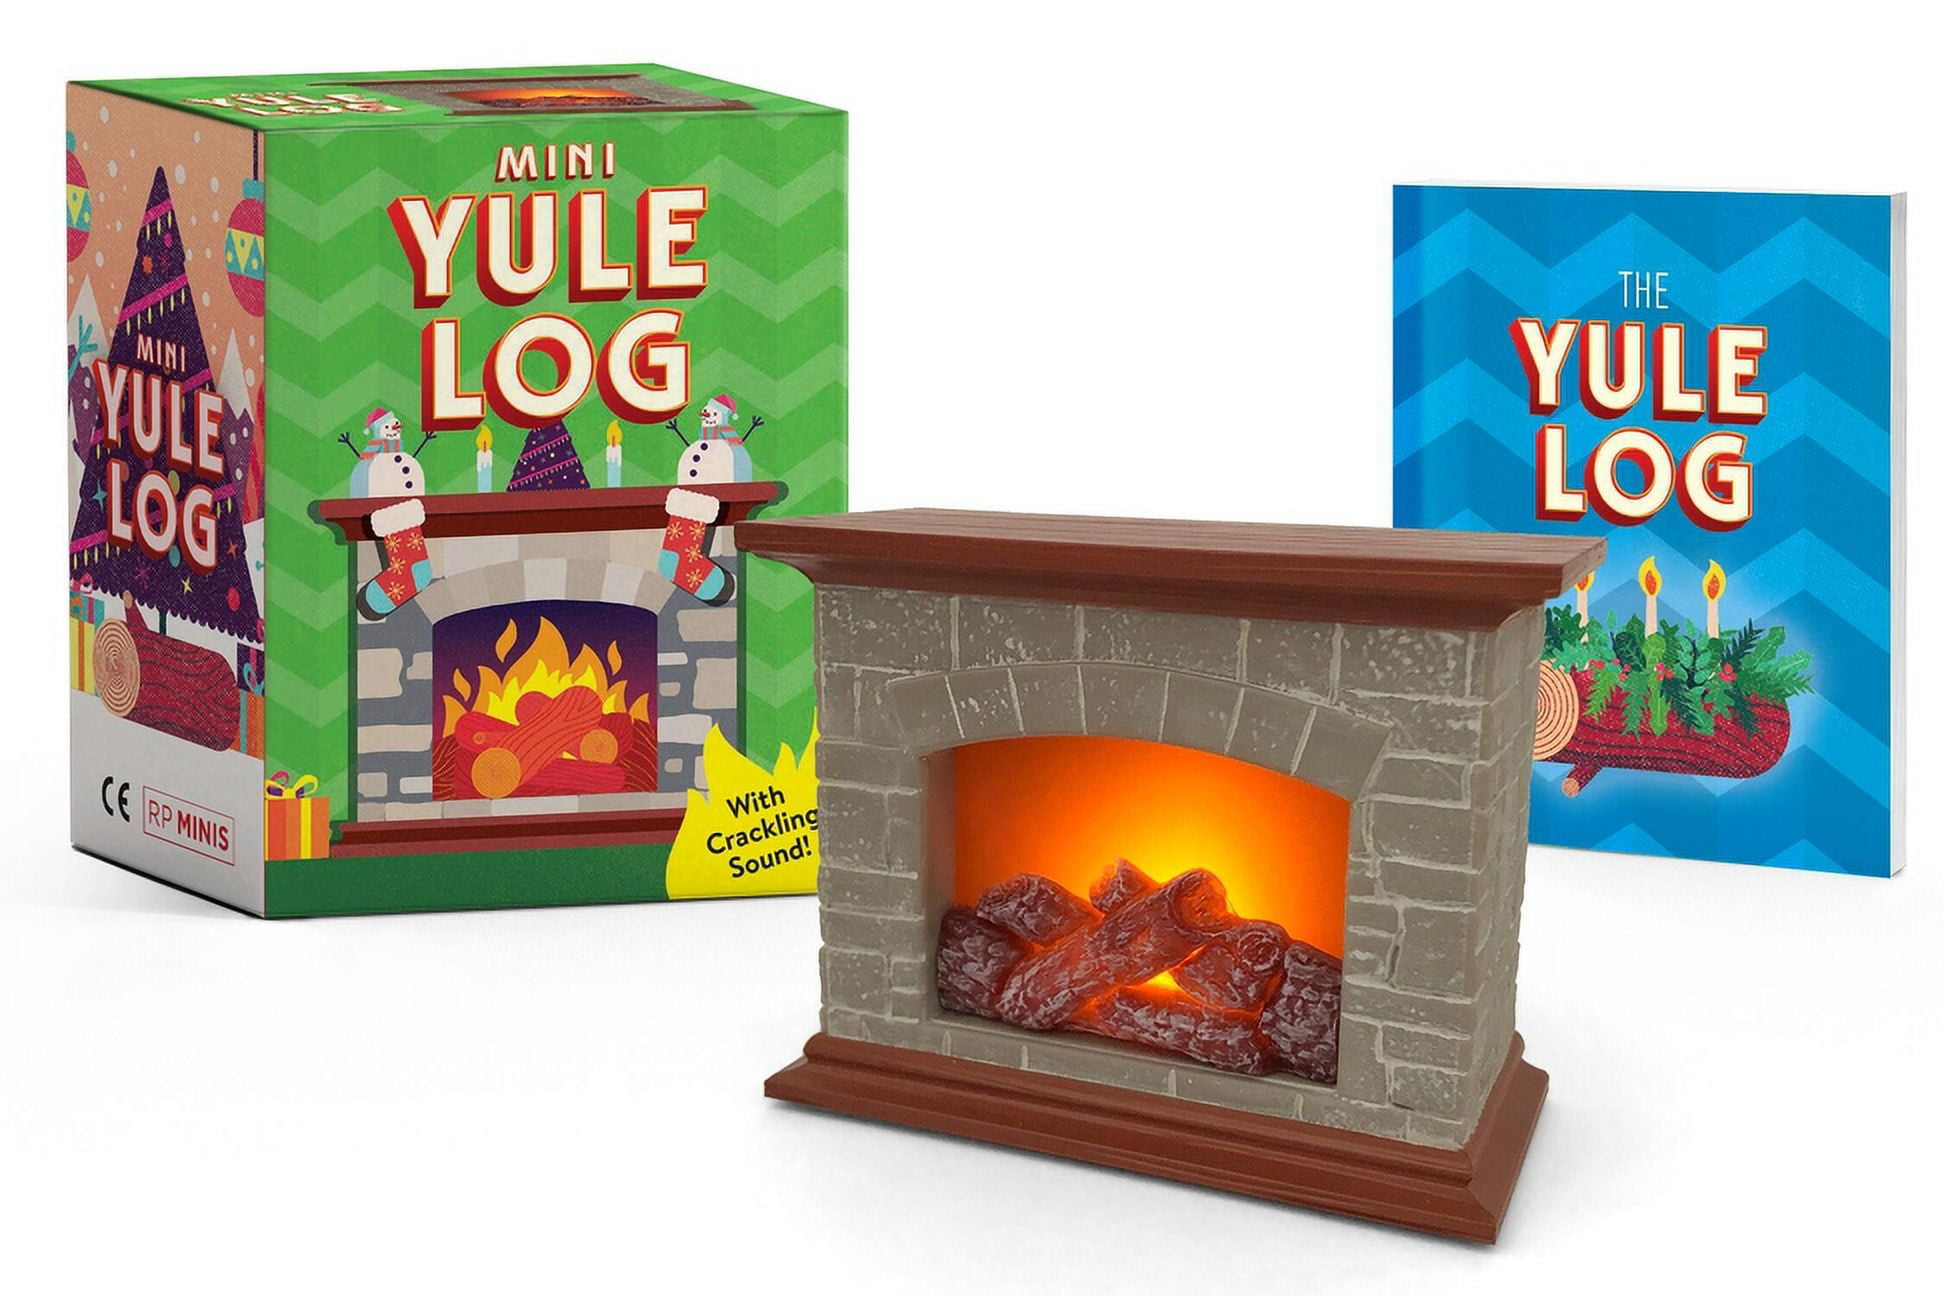 Mini Yule log kit - Elicuisine